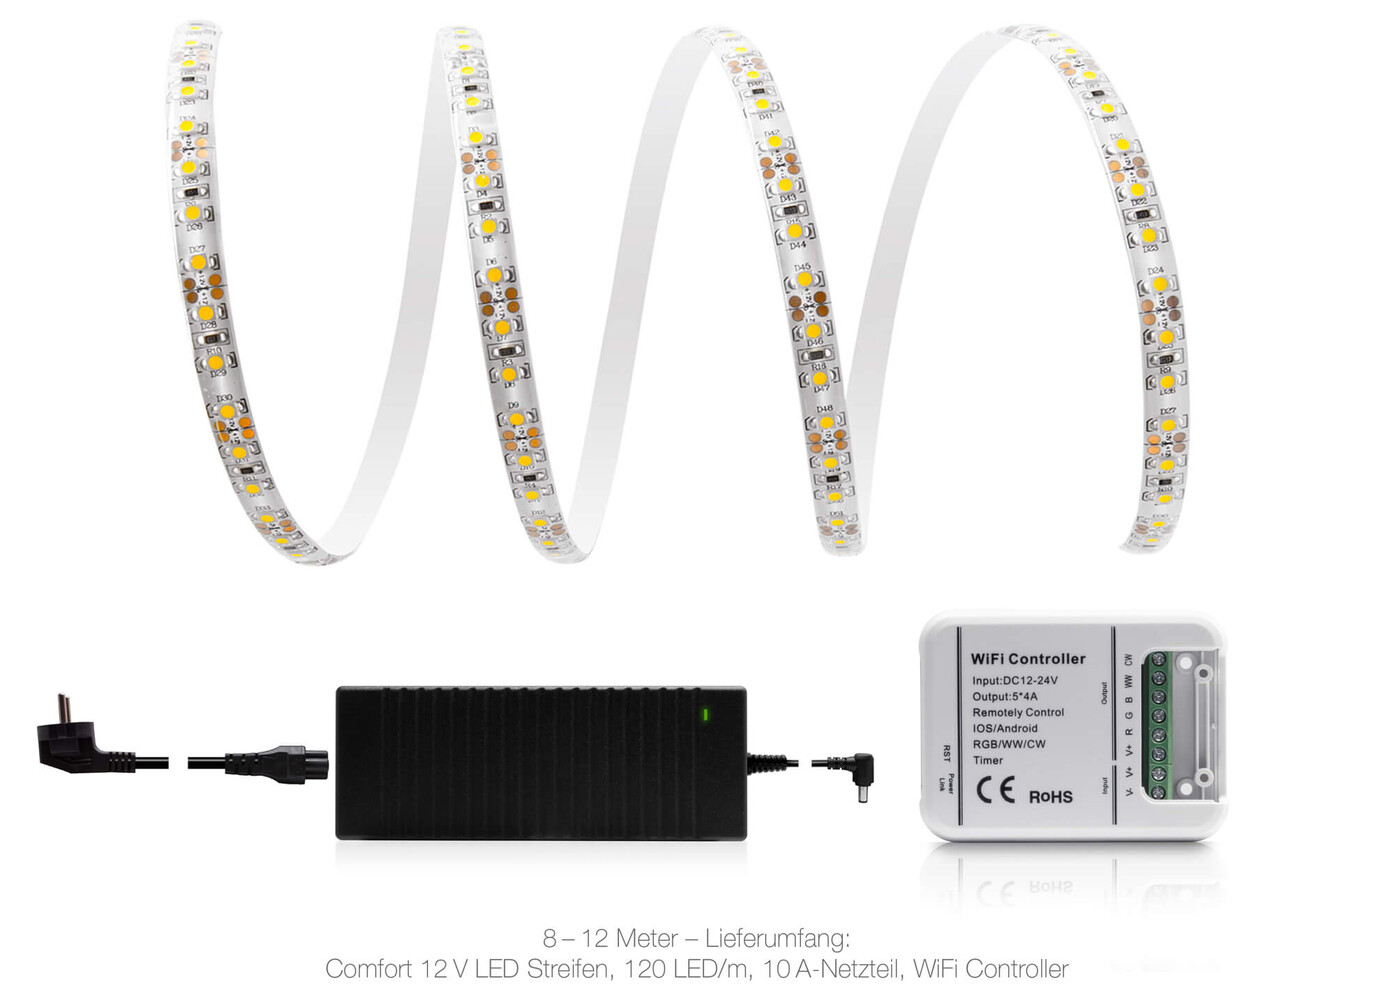 Hochwertiger, warmweißer LED Streifen von LED Universum mit 120 LEDs pro Meter, IP65 geschützt und WLAN Funktion